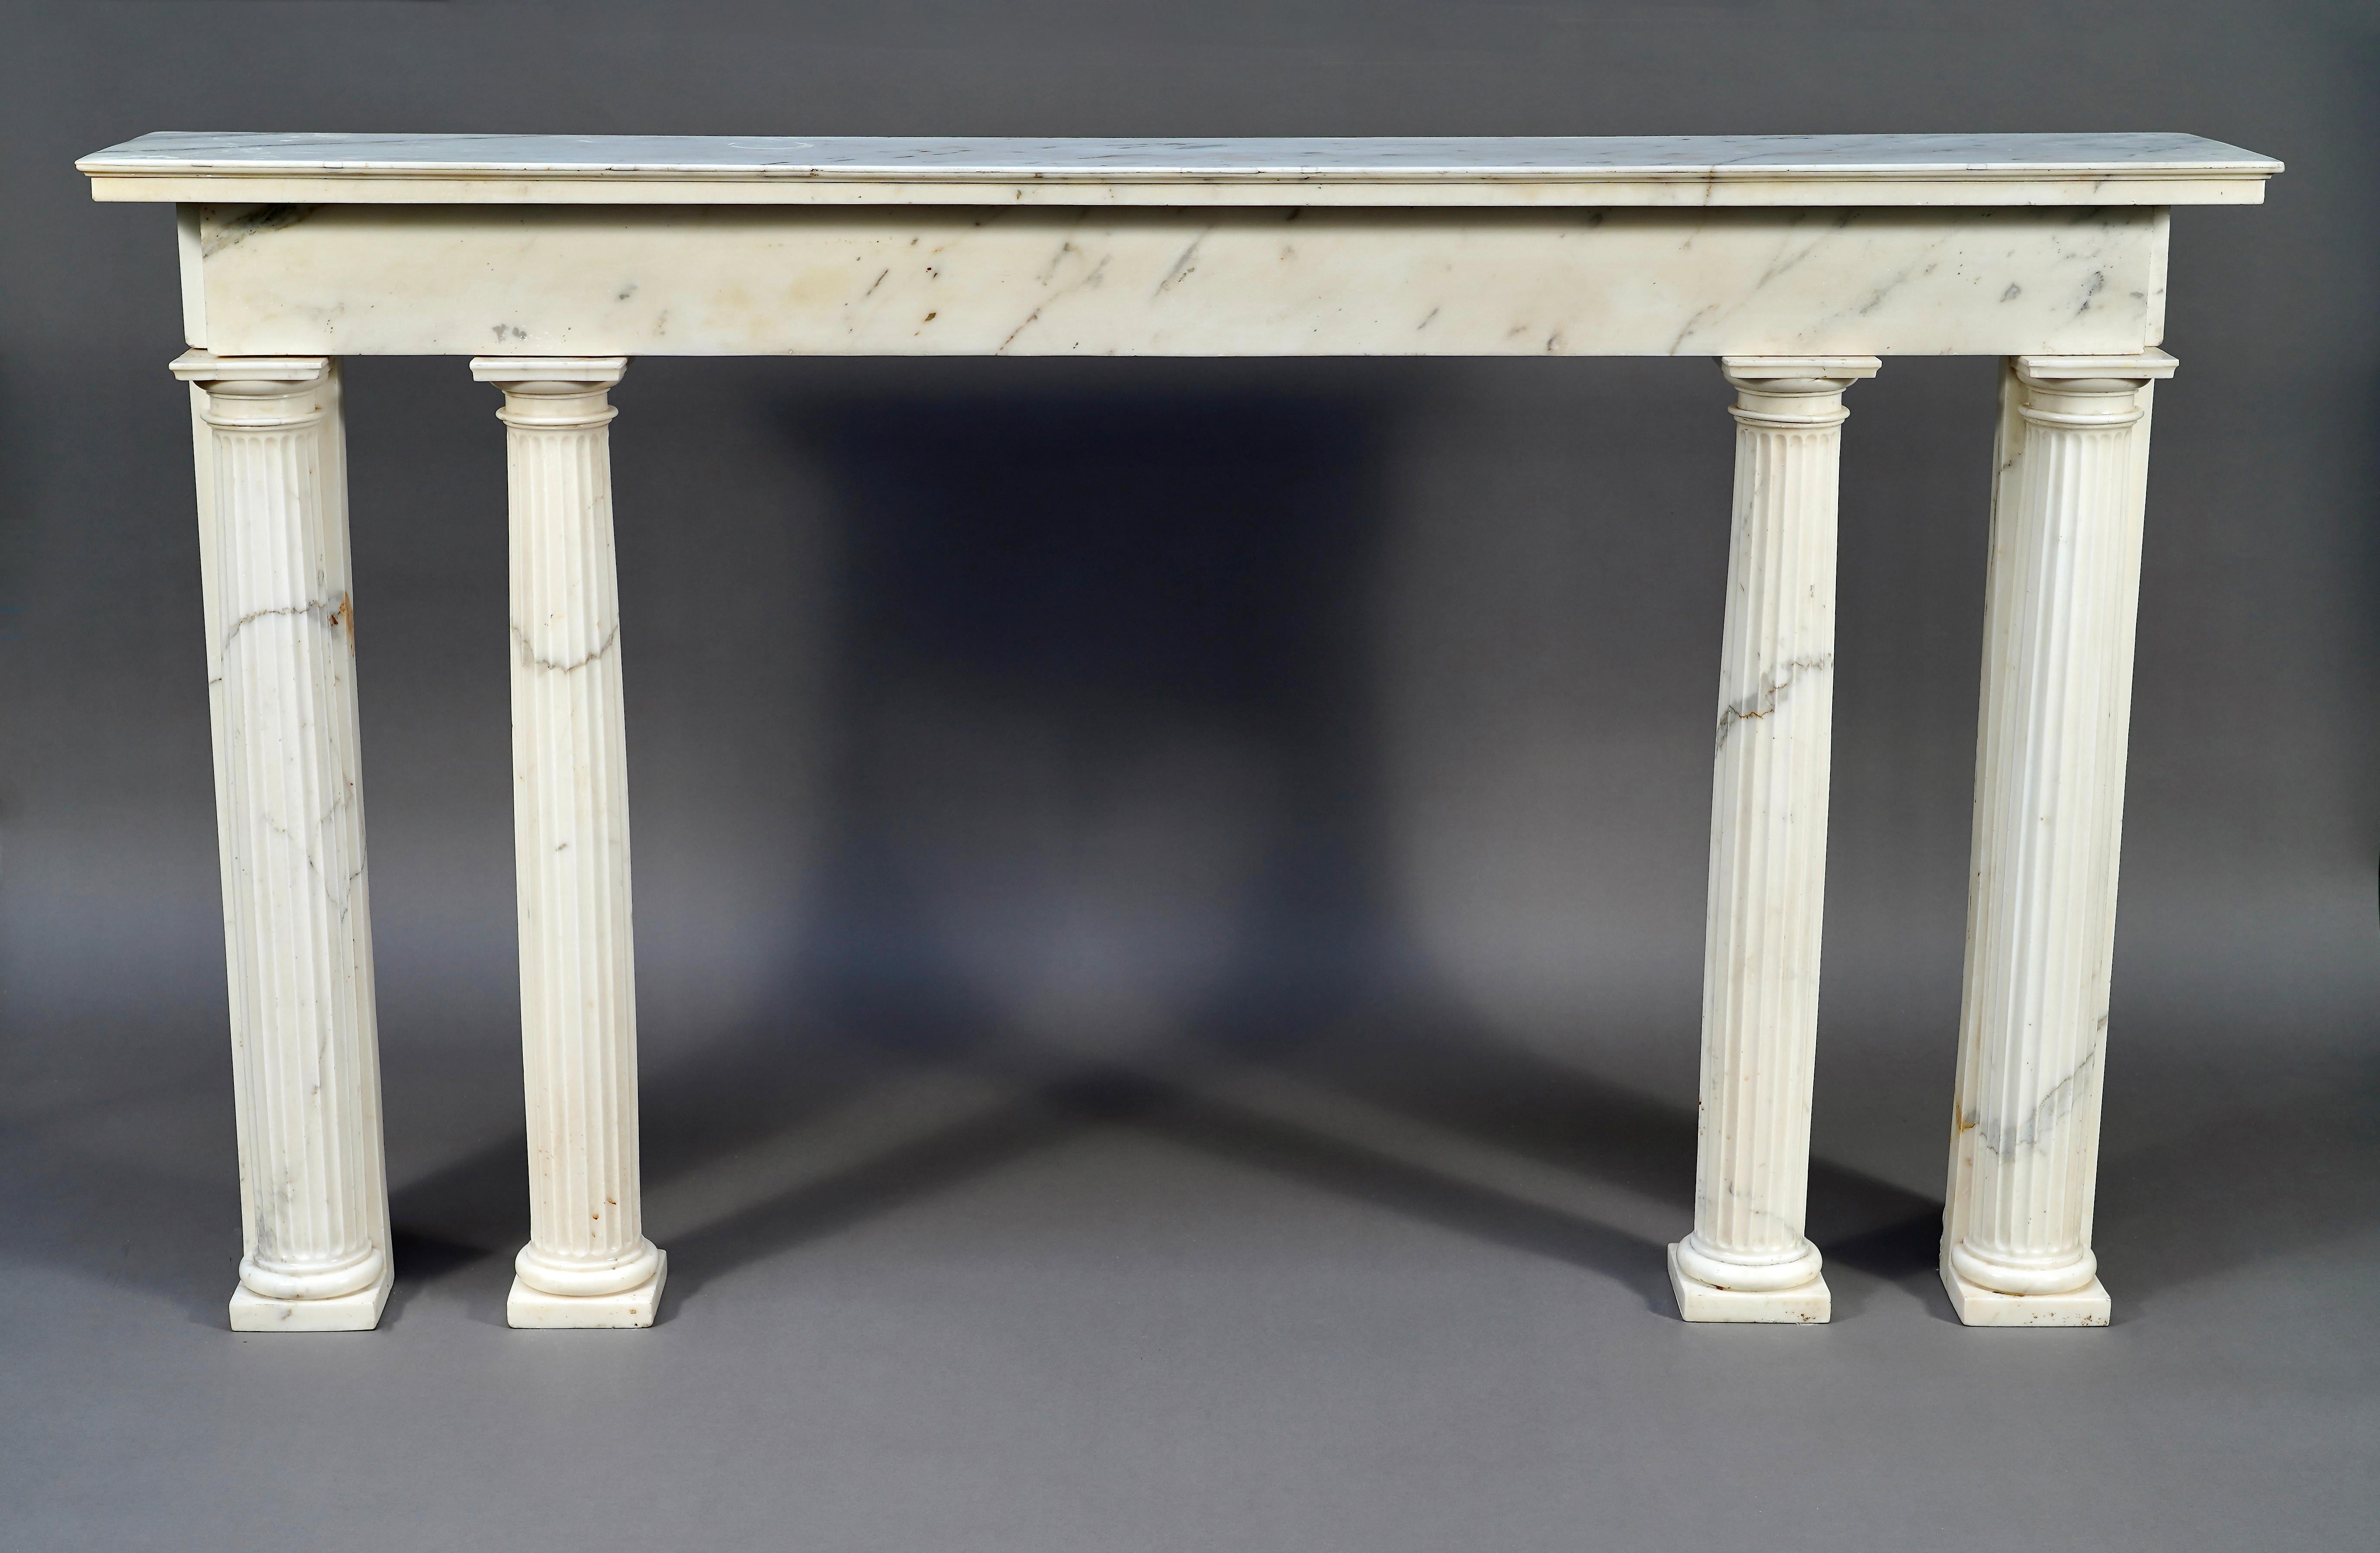 Rare console néo-classique d'époque Louis XVI sculptée en marbre blanc de Carrare. Le linteau rectangulaire, surmonté d'un sommet mouluré, est soutenu par quatre colonnes cannelées détachées avec des chapiteaux doriques.

Les lignes droites et le